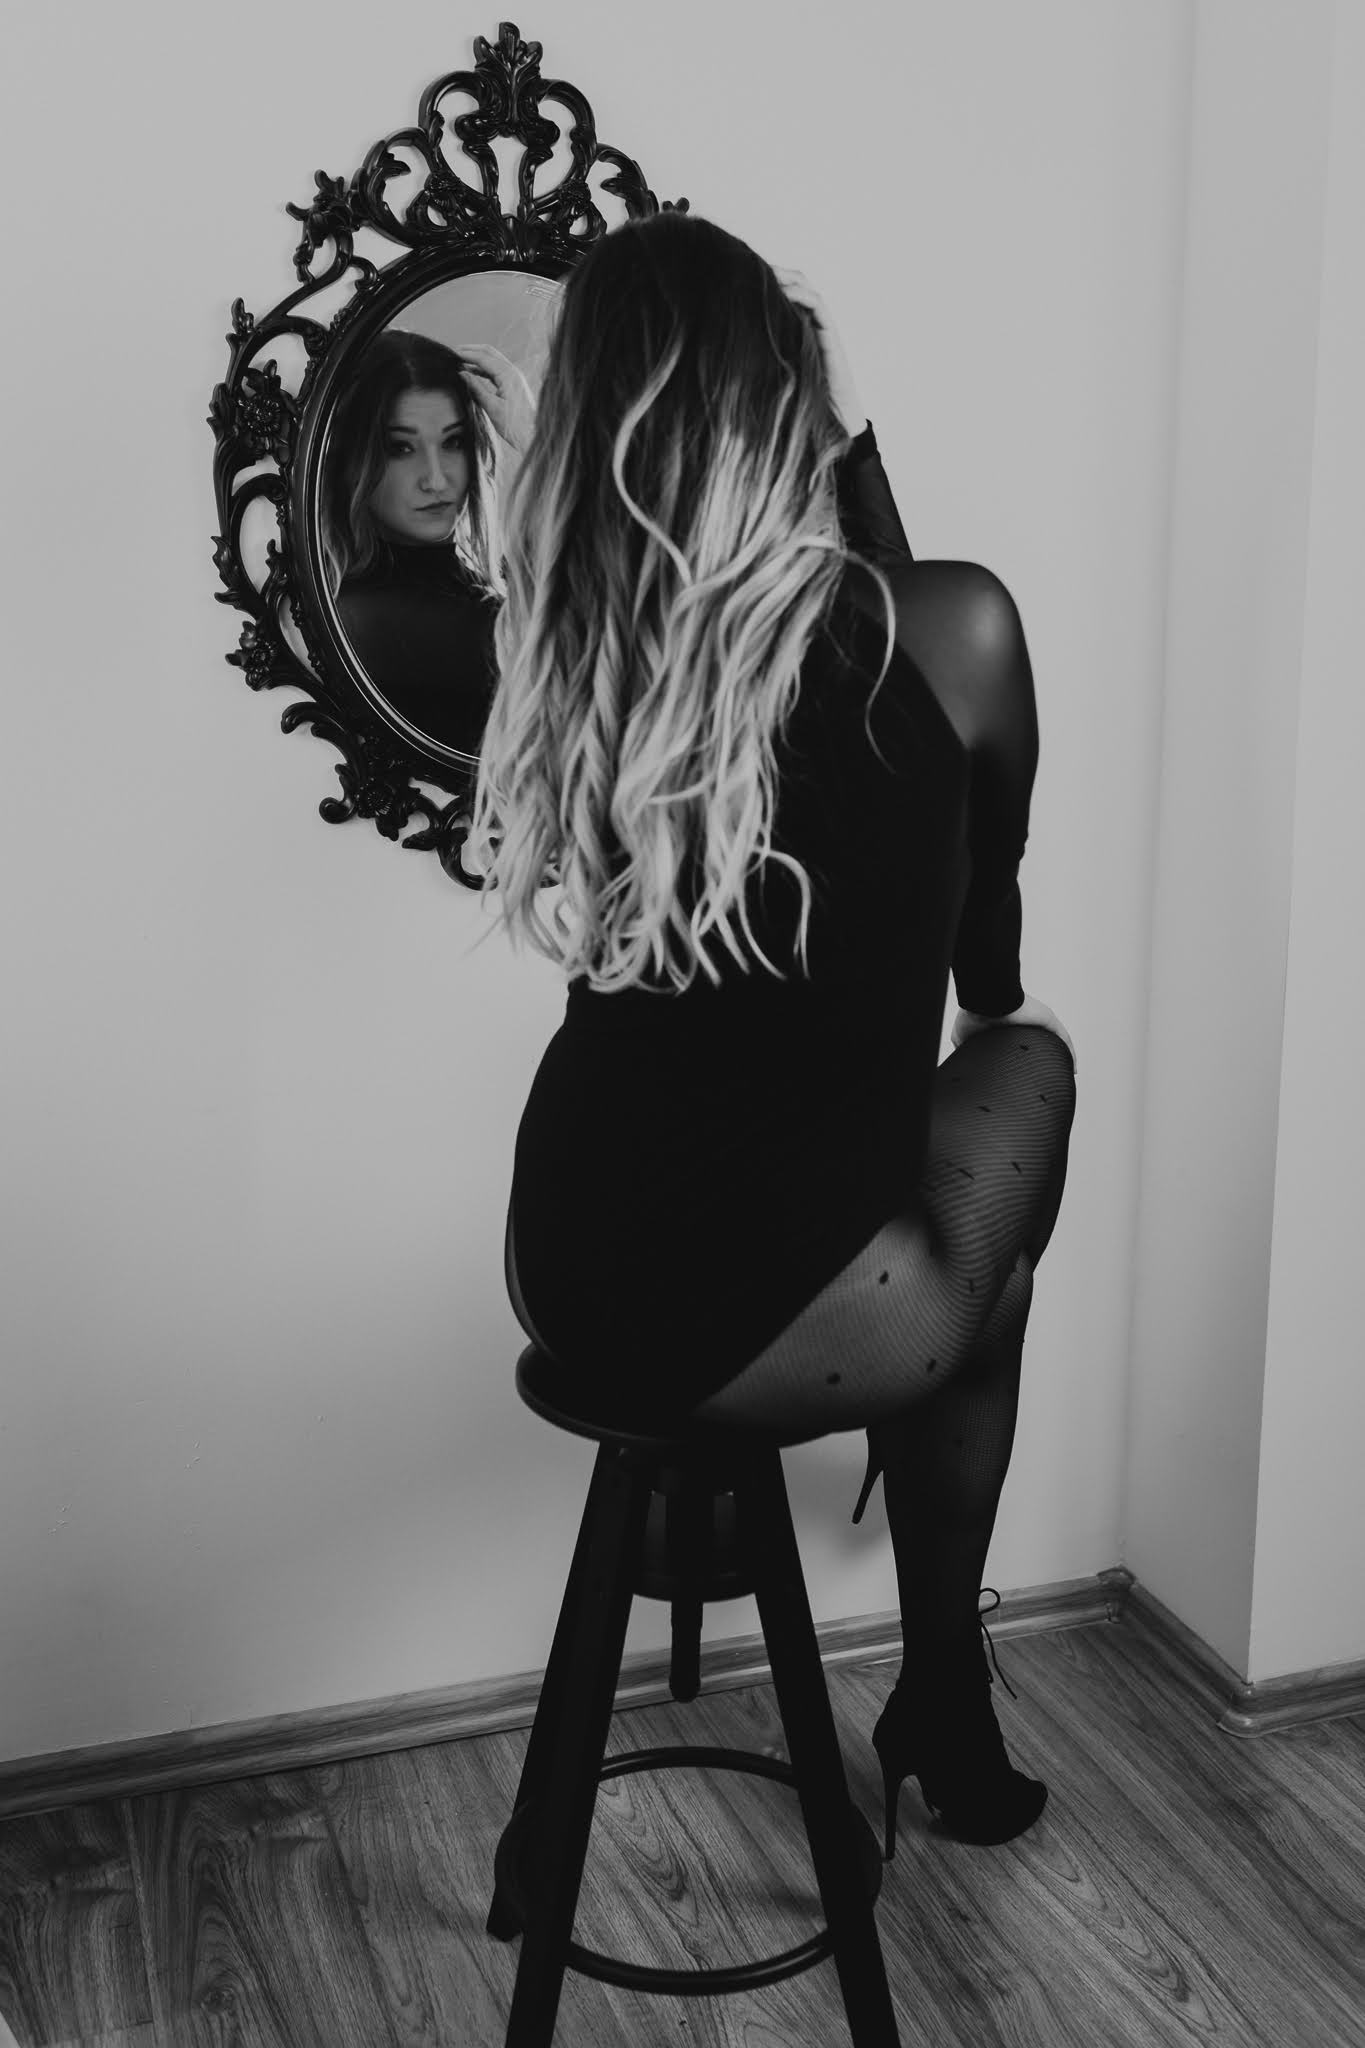 Kobieta siedzi na krześle i spogląda się w lustro na ścianie. Widzi swoje odbicie. Fotografia ekspresyjna